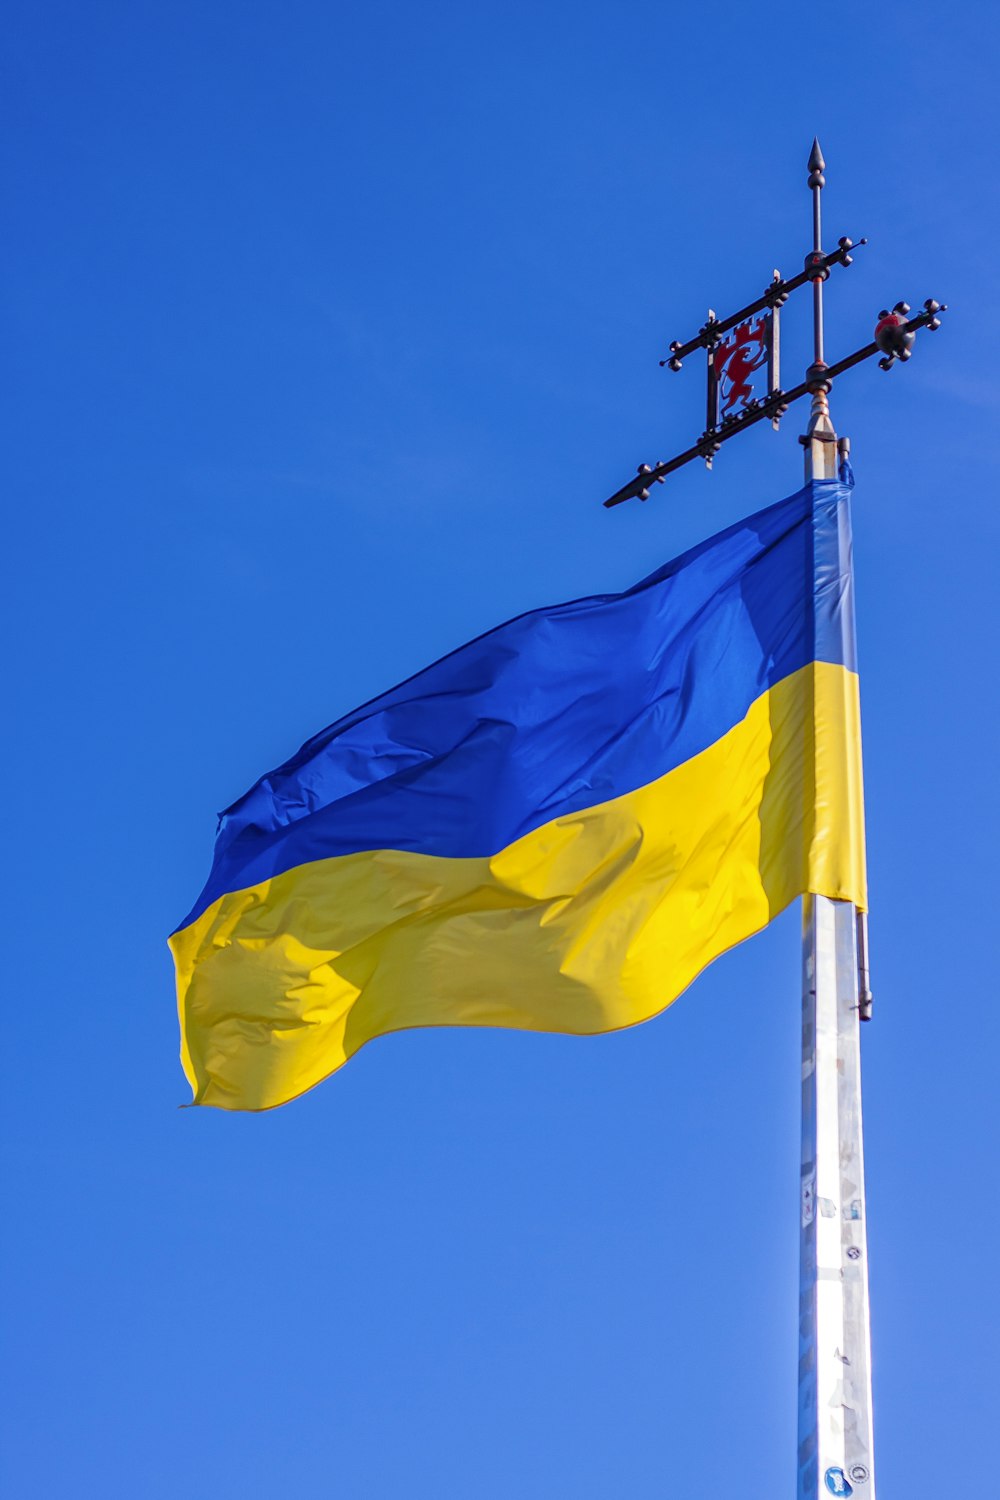 simpático Comportamiento venganza Foto Bandera amarilla y azul – Imagen Львівська область gratis en Unsplash